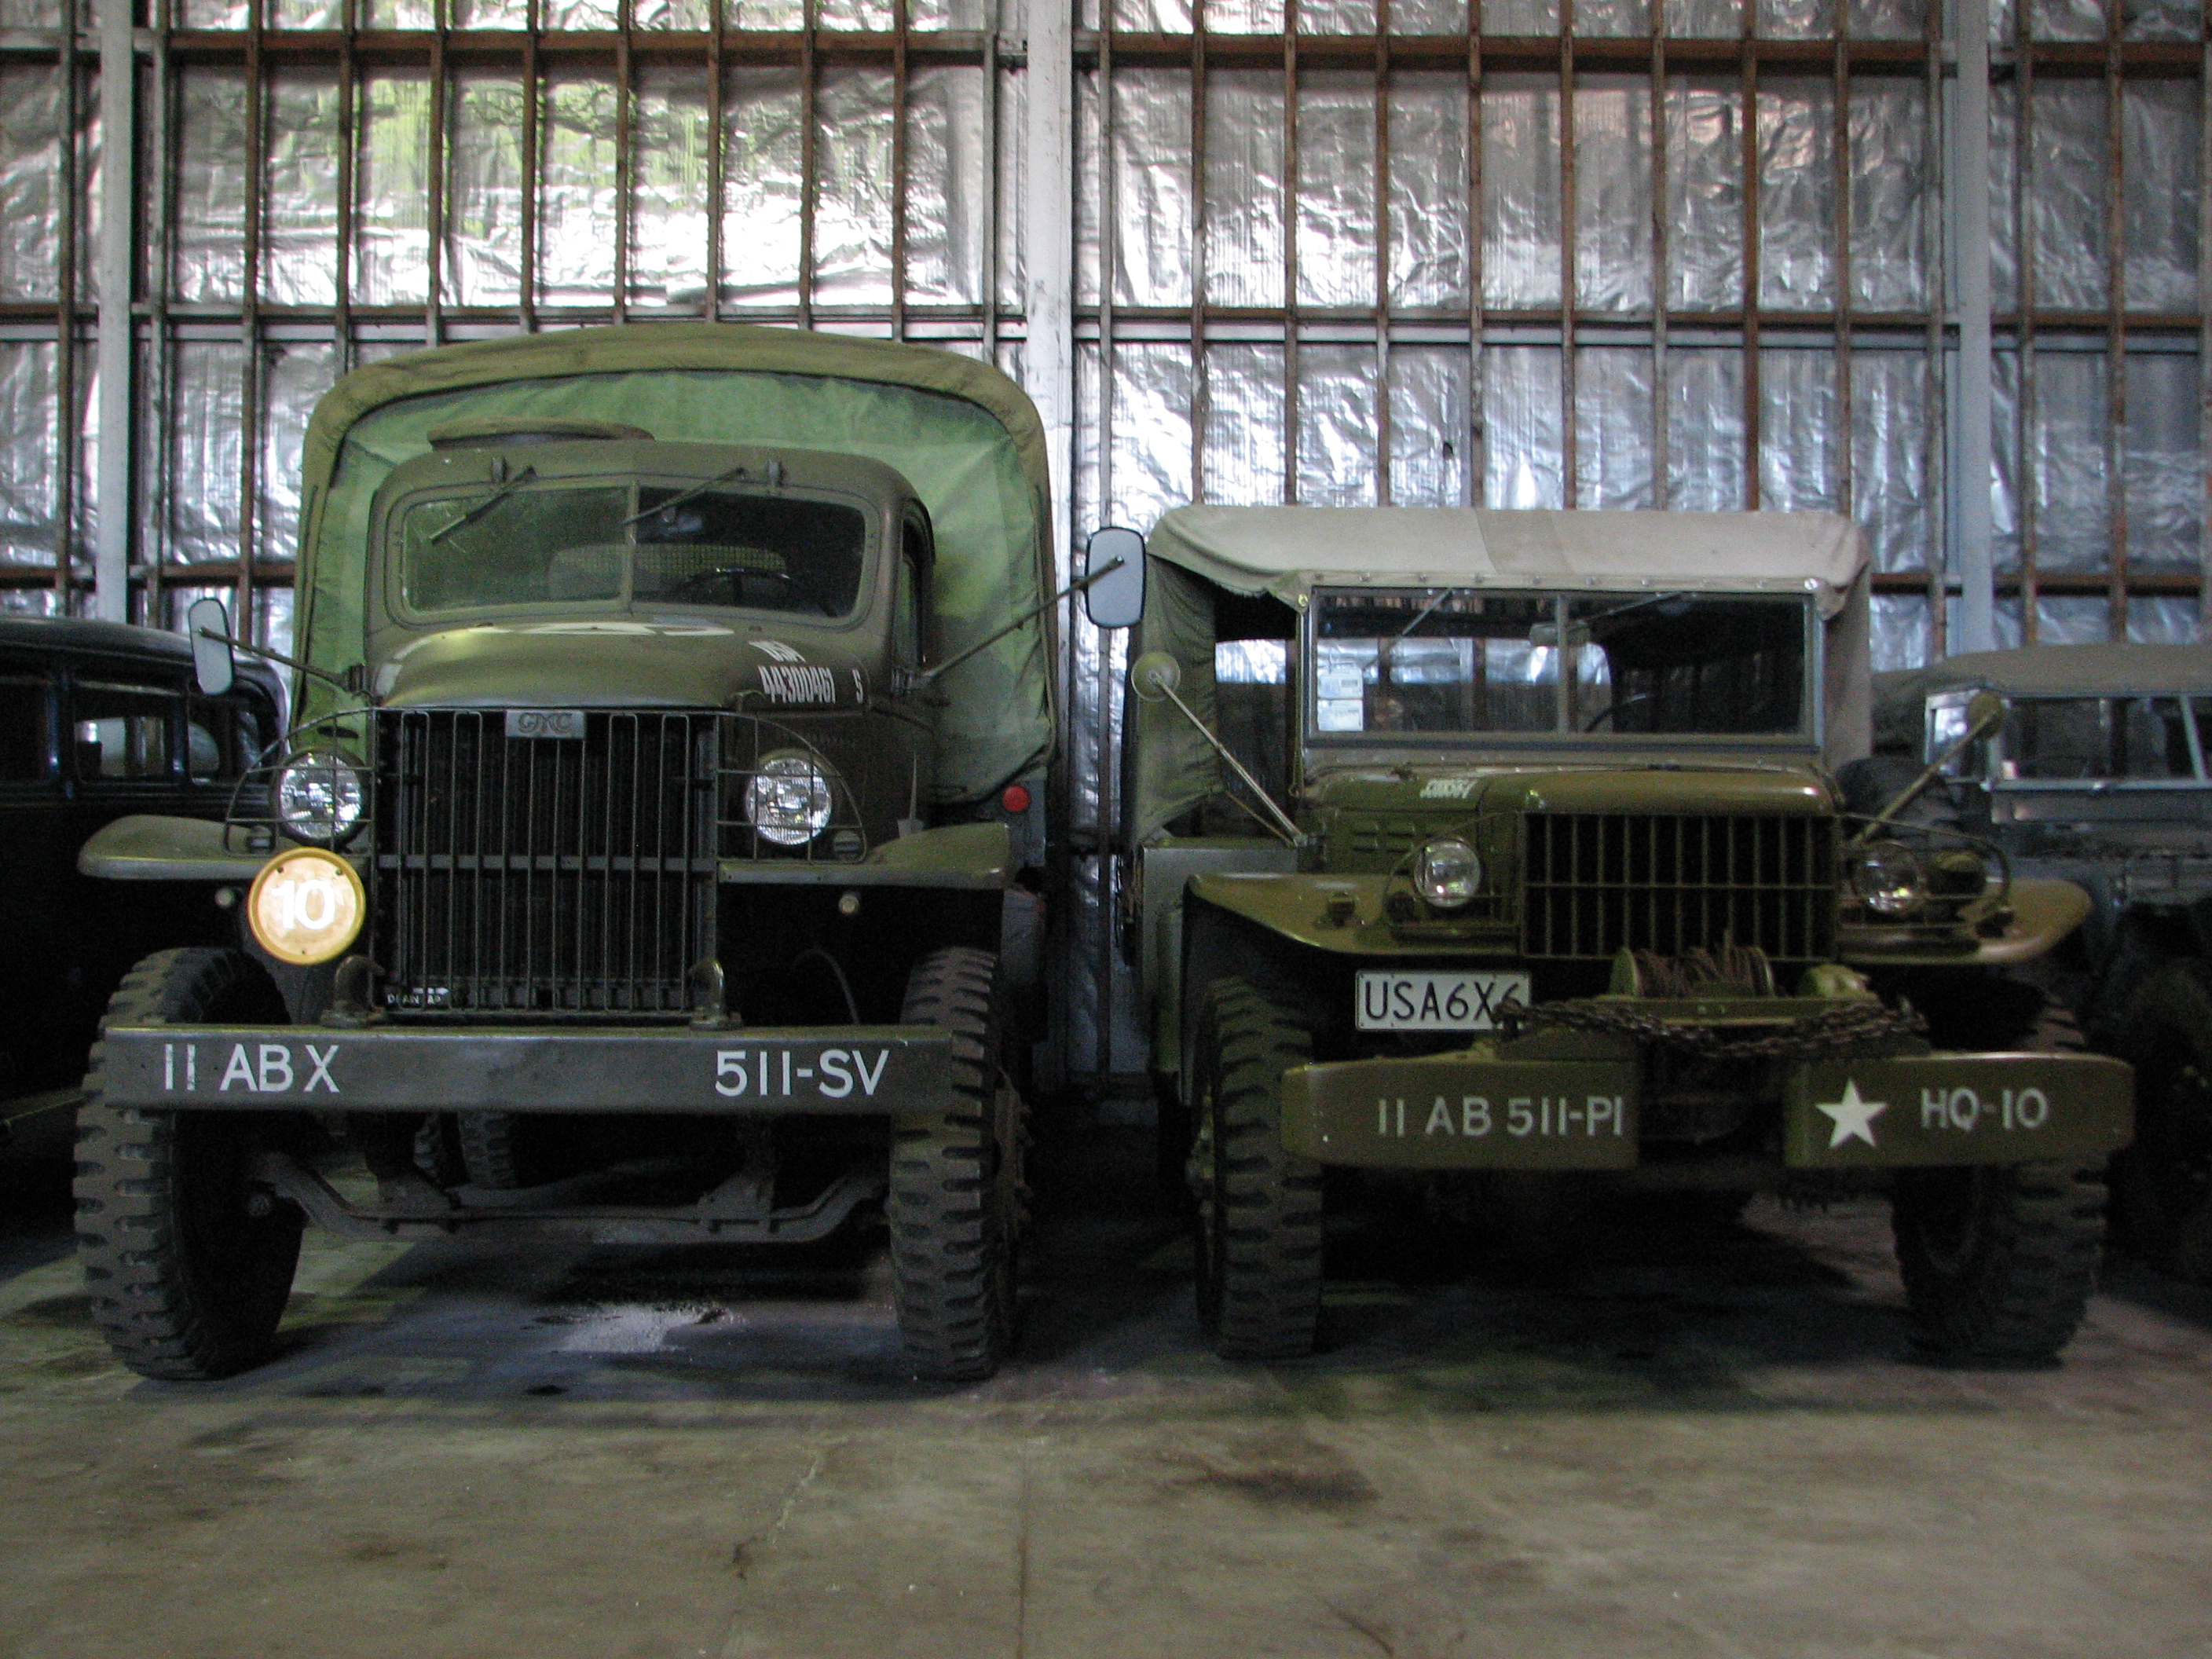 U.S. Army trucks